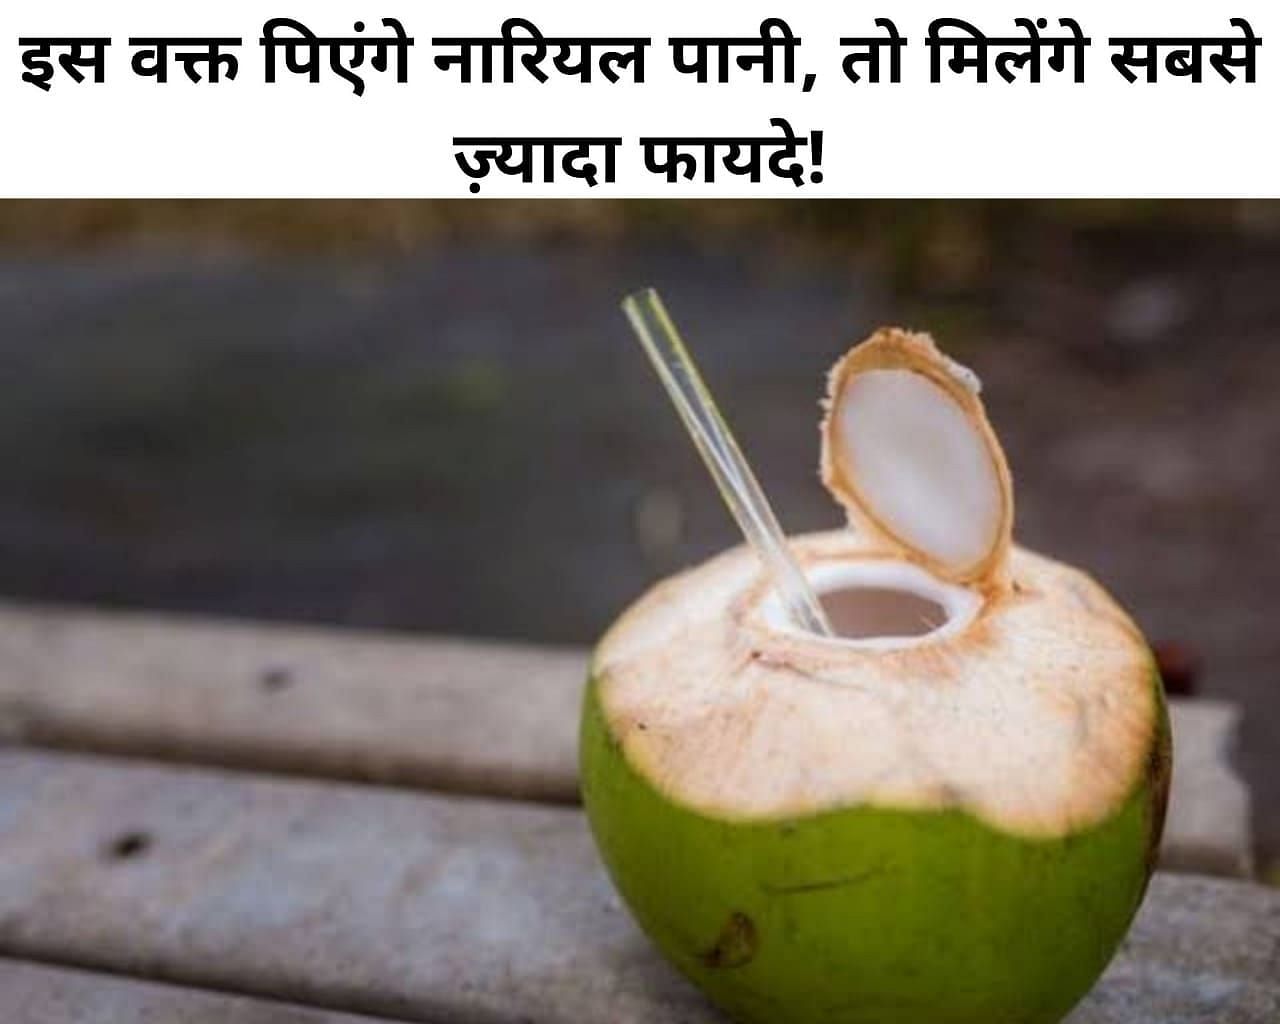 इस वक्त पिएंगे नारियल पानी, तो मिलेंगे सबसे ज़्यादा फायदे! (फोटो - sportskeeda hindi)